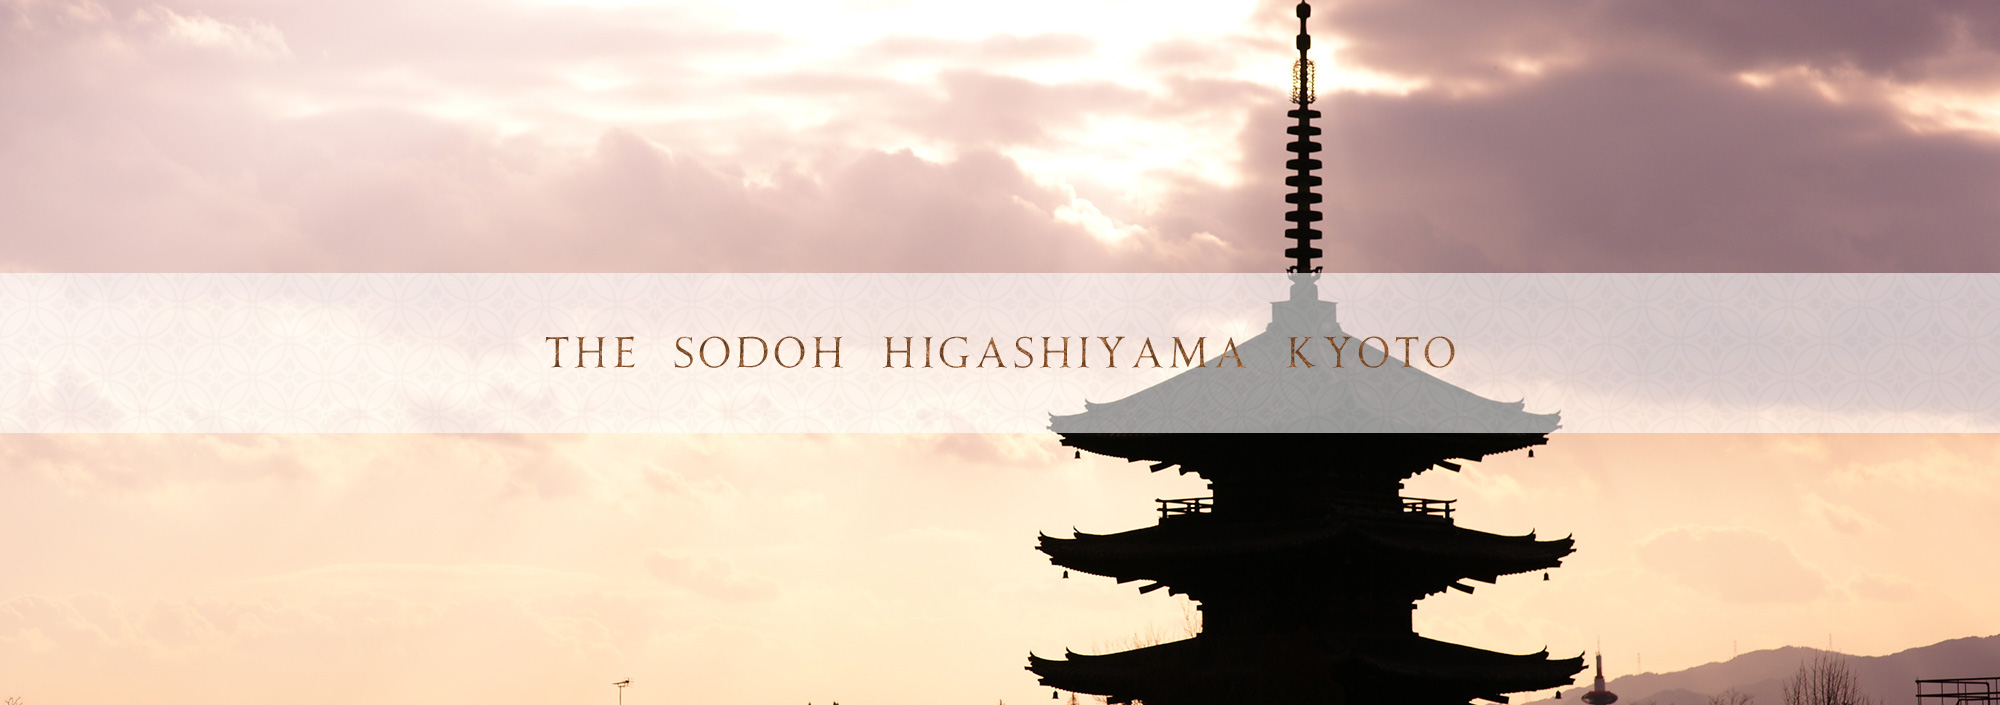 THE SODOH HIGASHIYAMA KYOTO